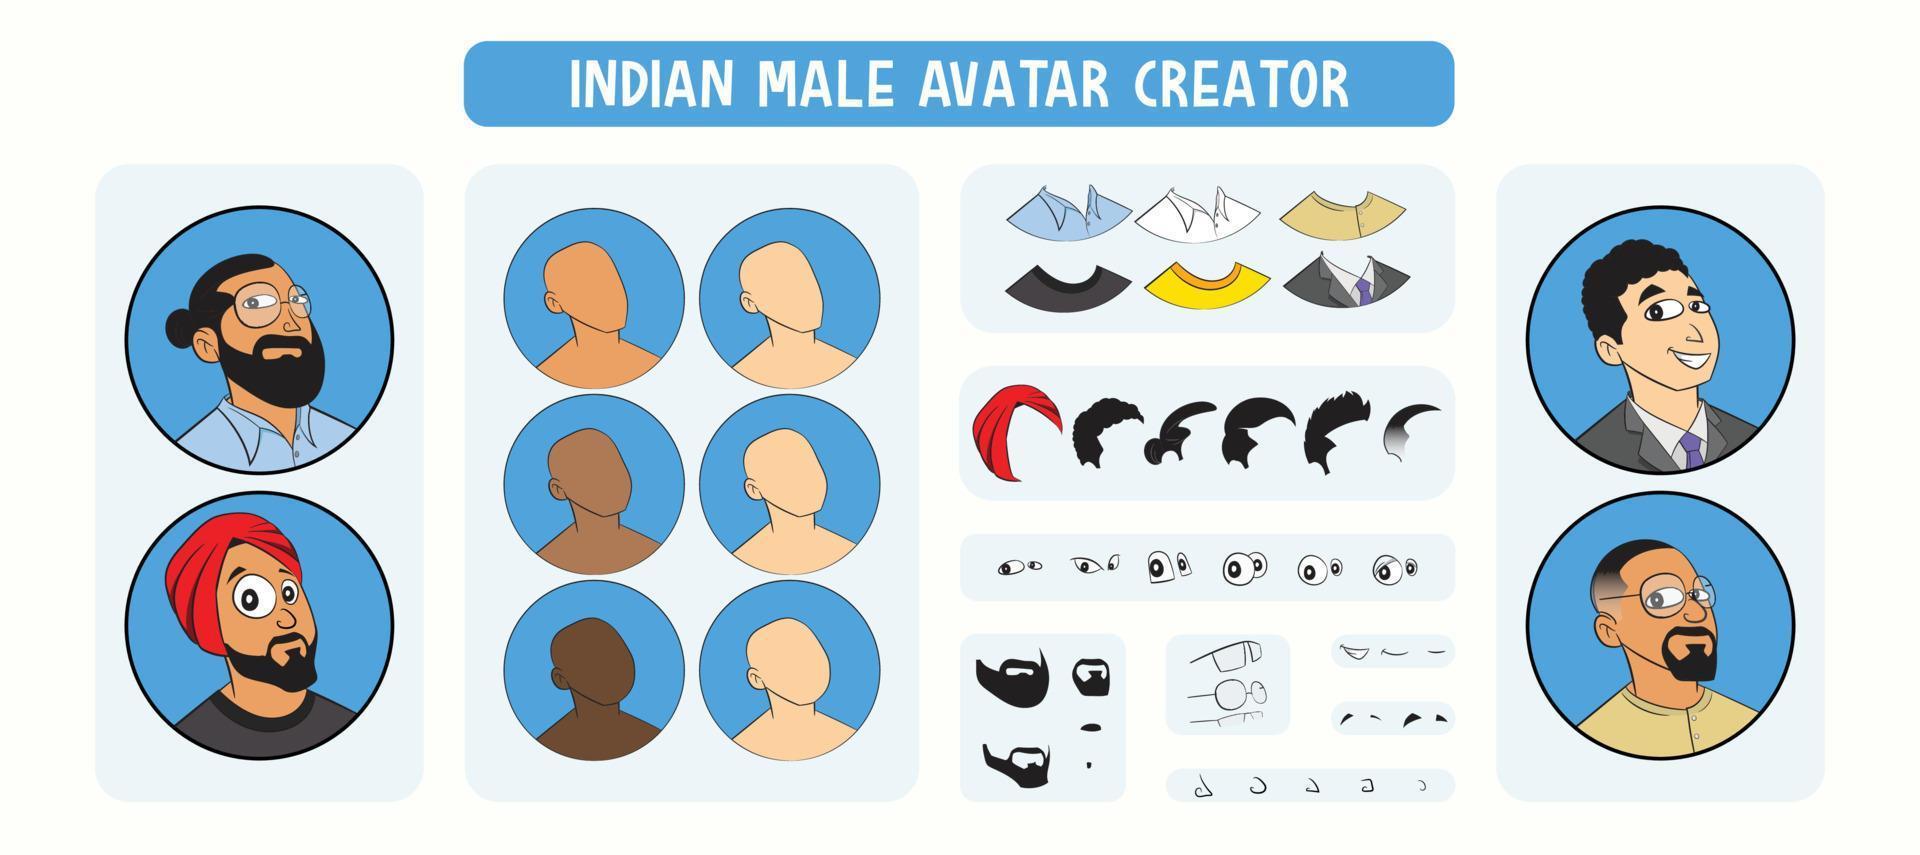 Image de profil d'avatar masculin indien glisser-déposer kit de construction. ensemble de visages indiens avec différentes coiffures, y compris un turban et des expressions. kit de construction de visage bricolage pour personnage masculin indien. vecteur